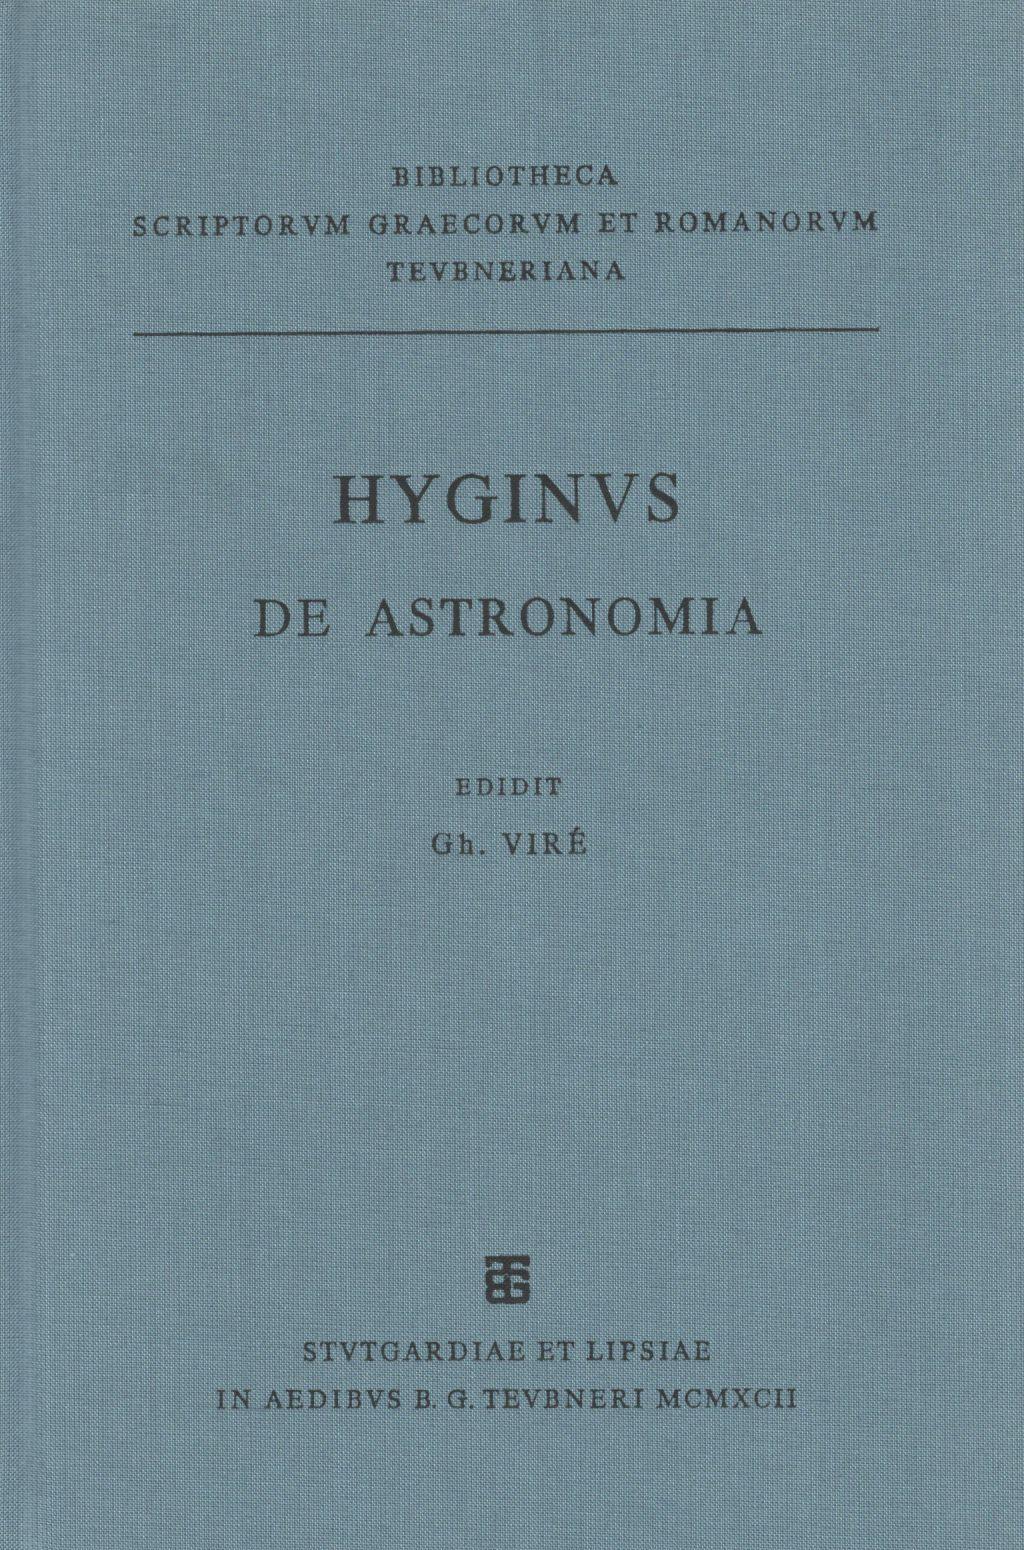 HYGINI DE ASTRONOMIA